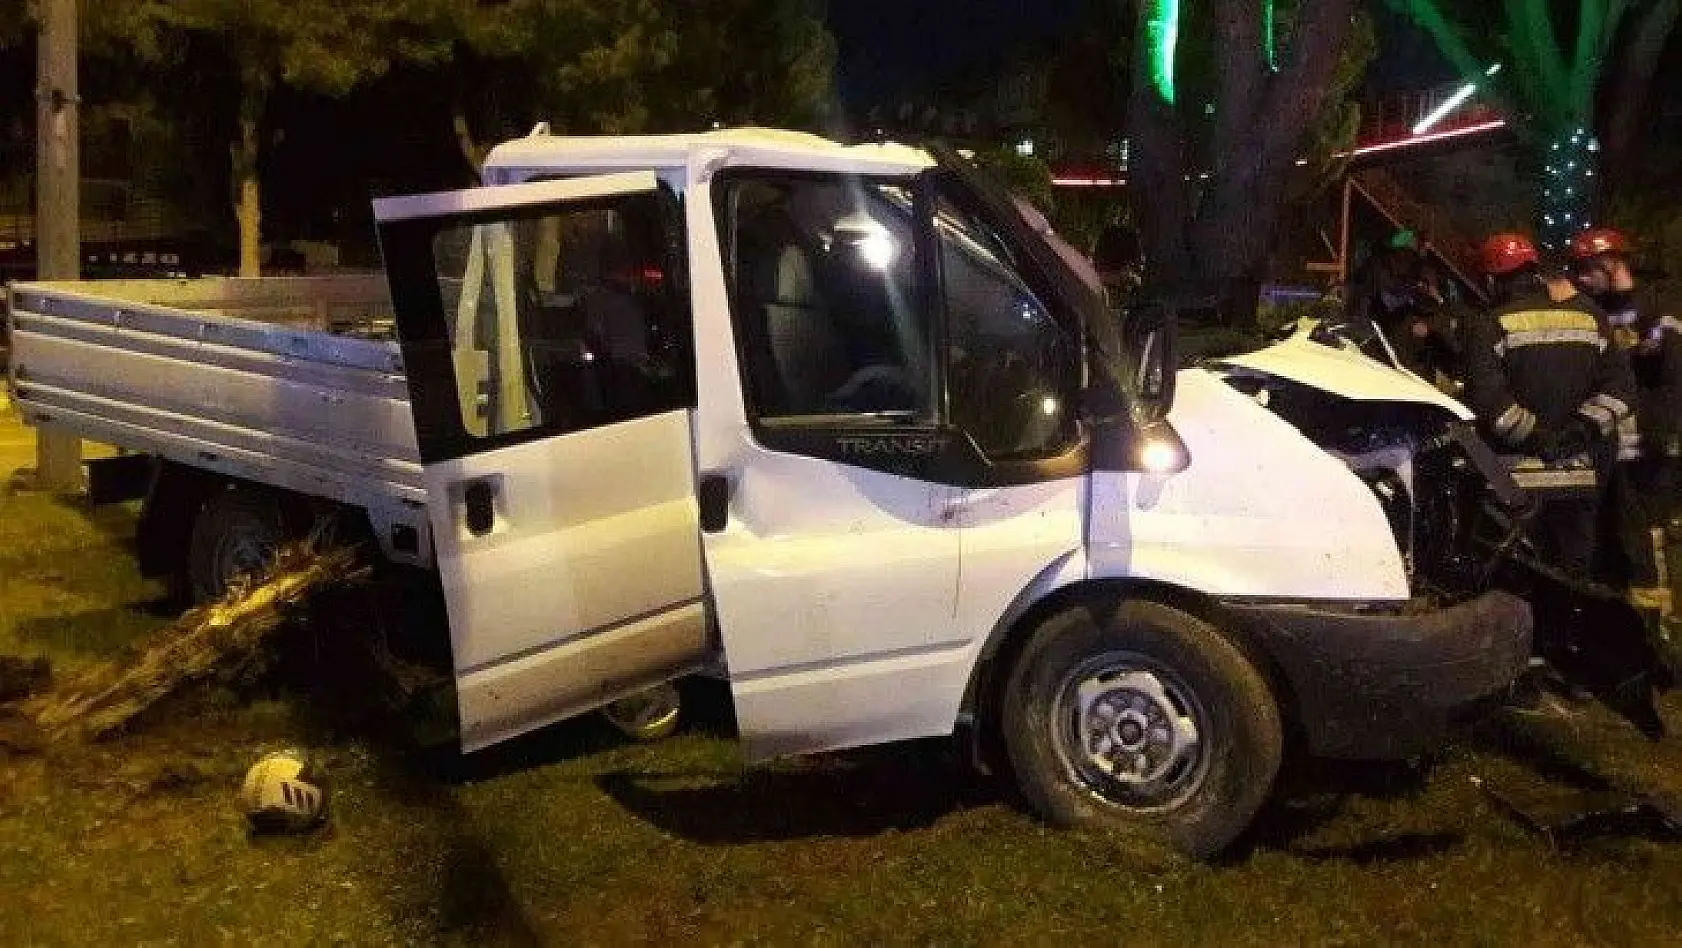 Manisa'da trafik kazası: 2 ölü